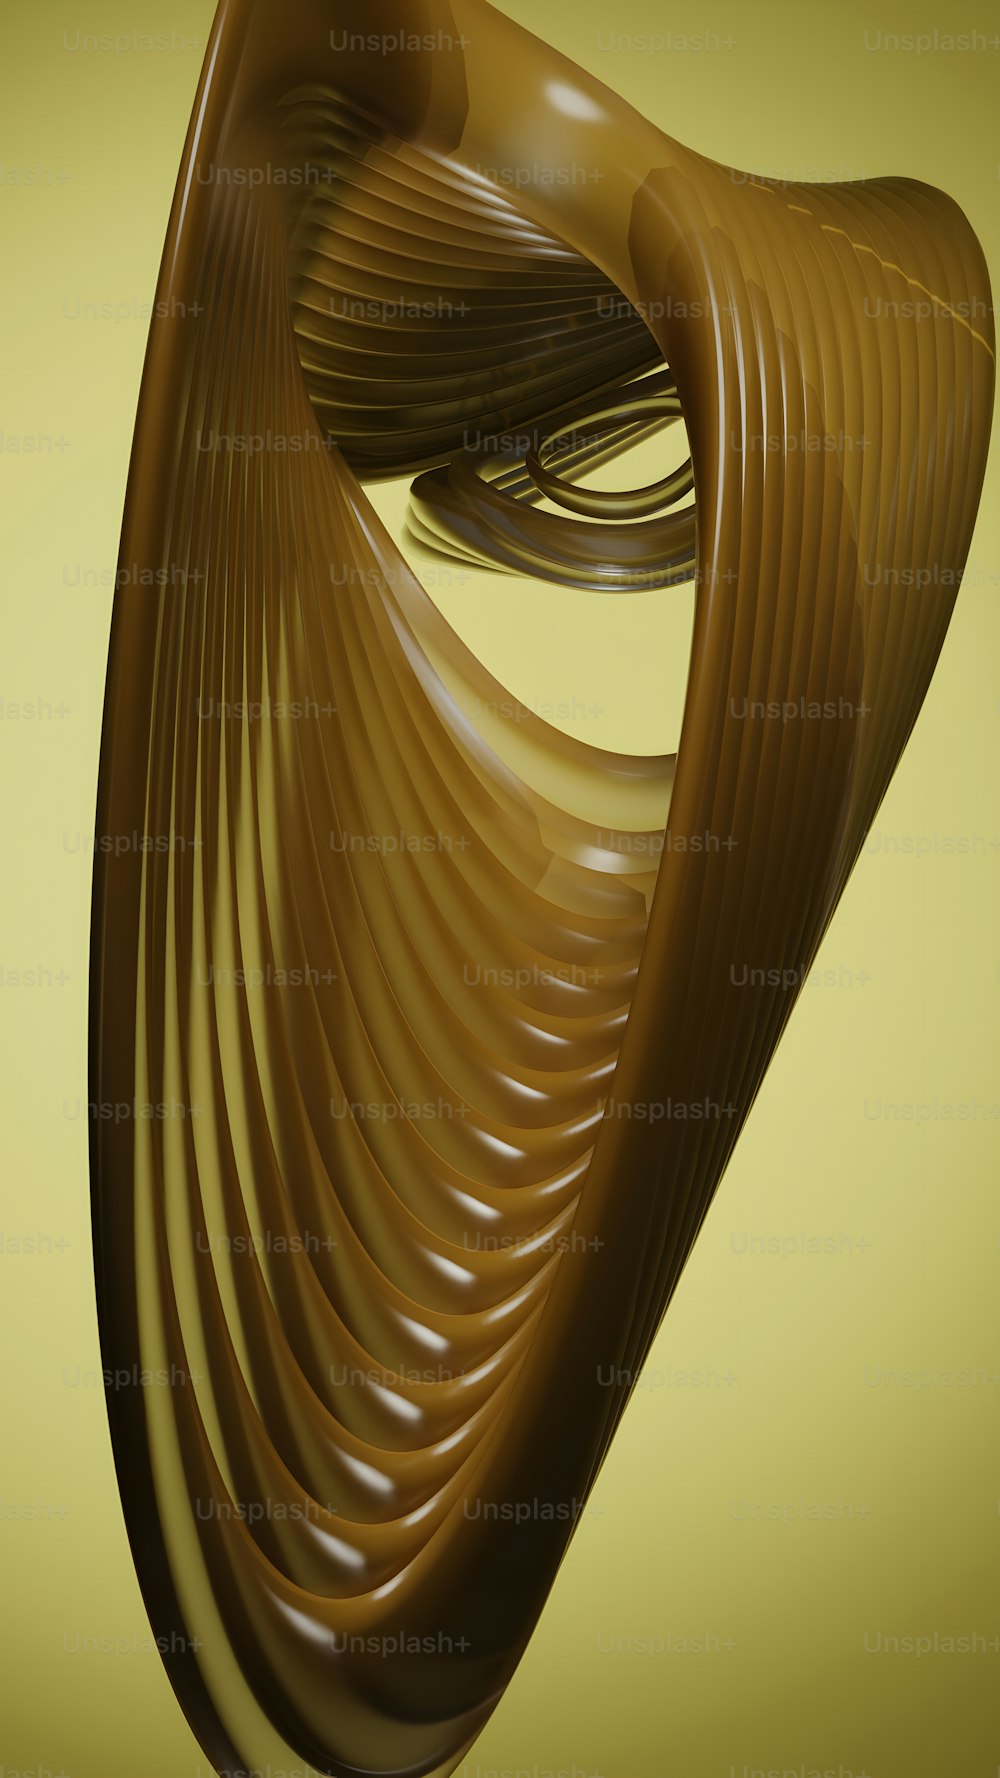 Un objeto marrón con líneas onduladas sobre un fondo amarillo